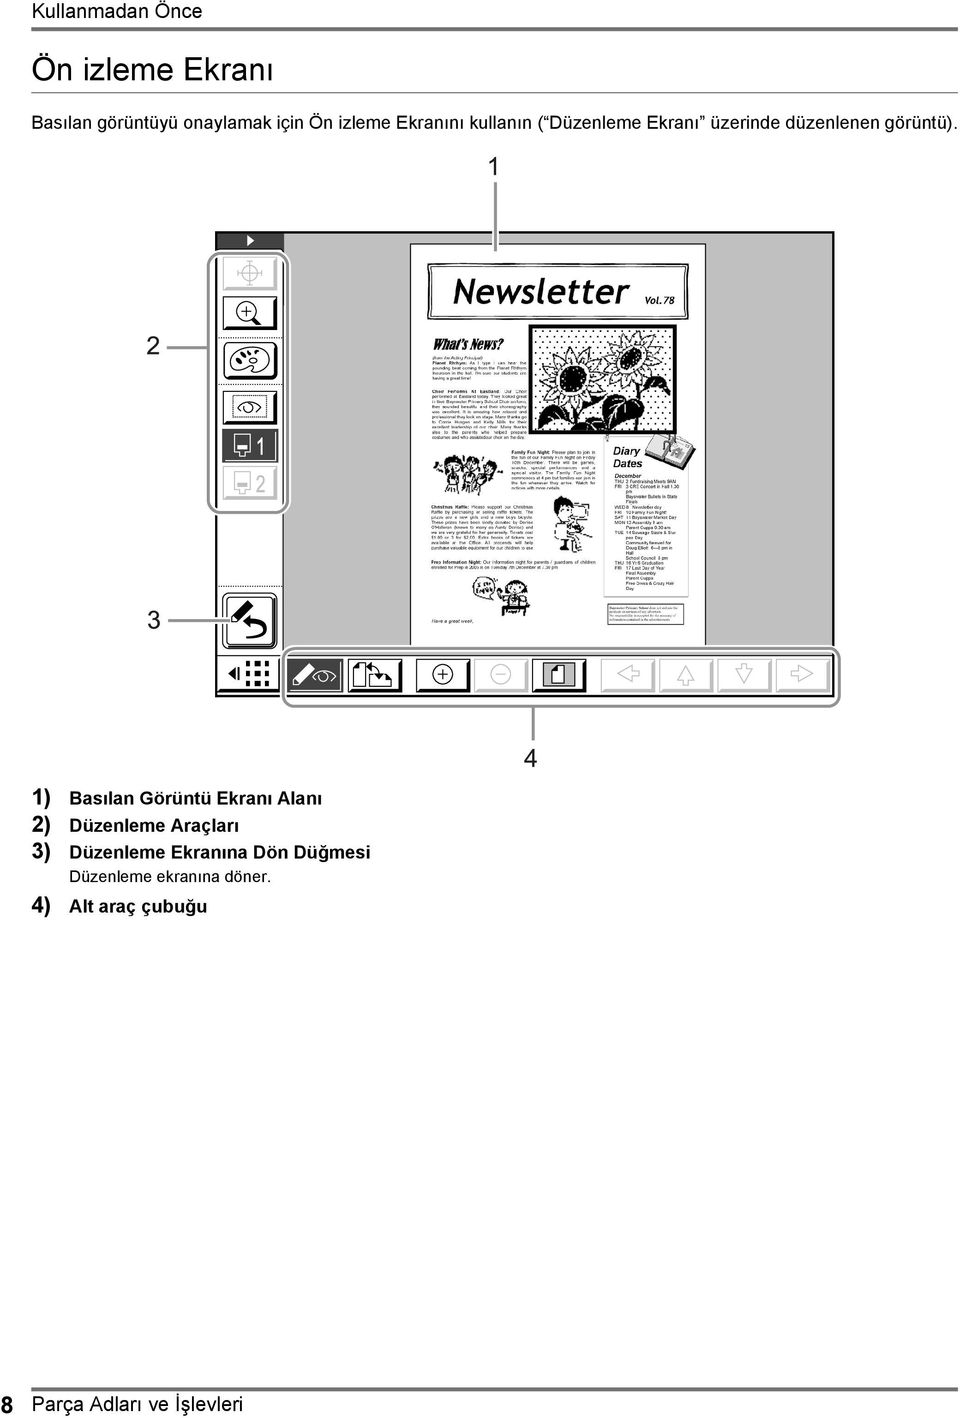 1) Basılan Görüntü Ekranı Alanı 2) Düzenleme Araçları 3) Düzenleme Ekranına